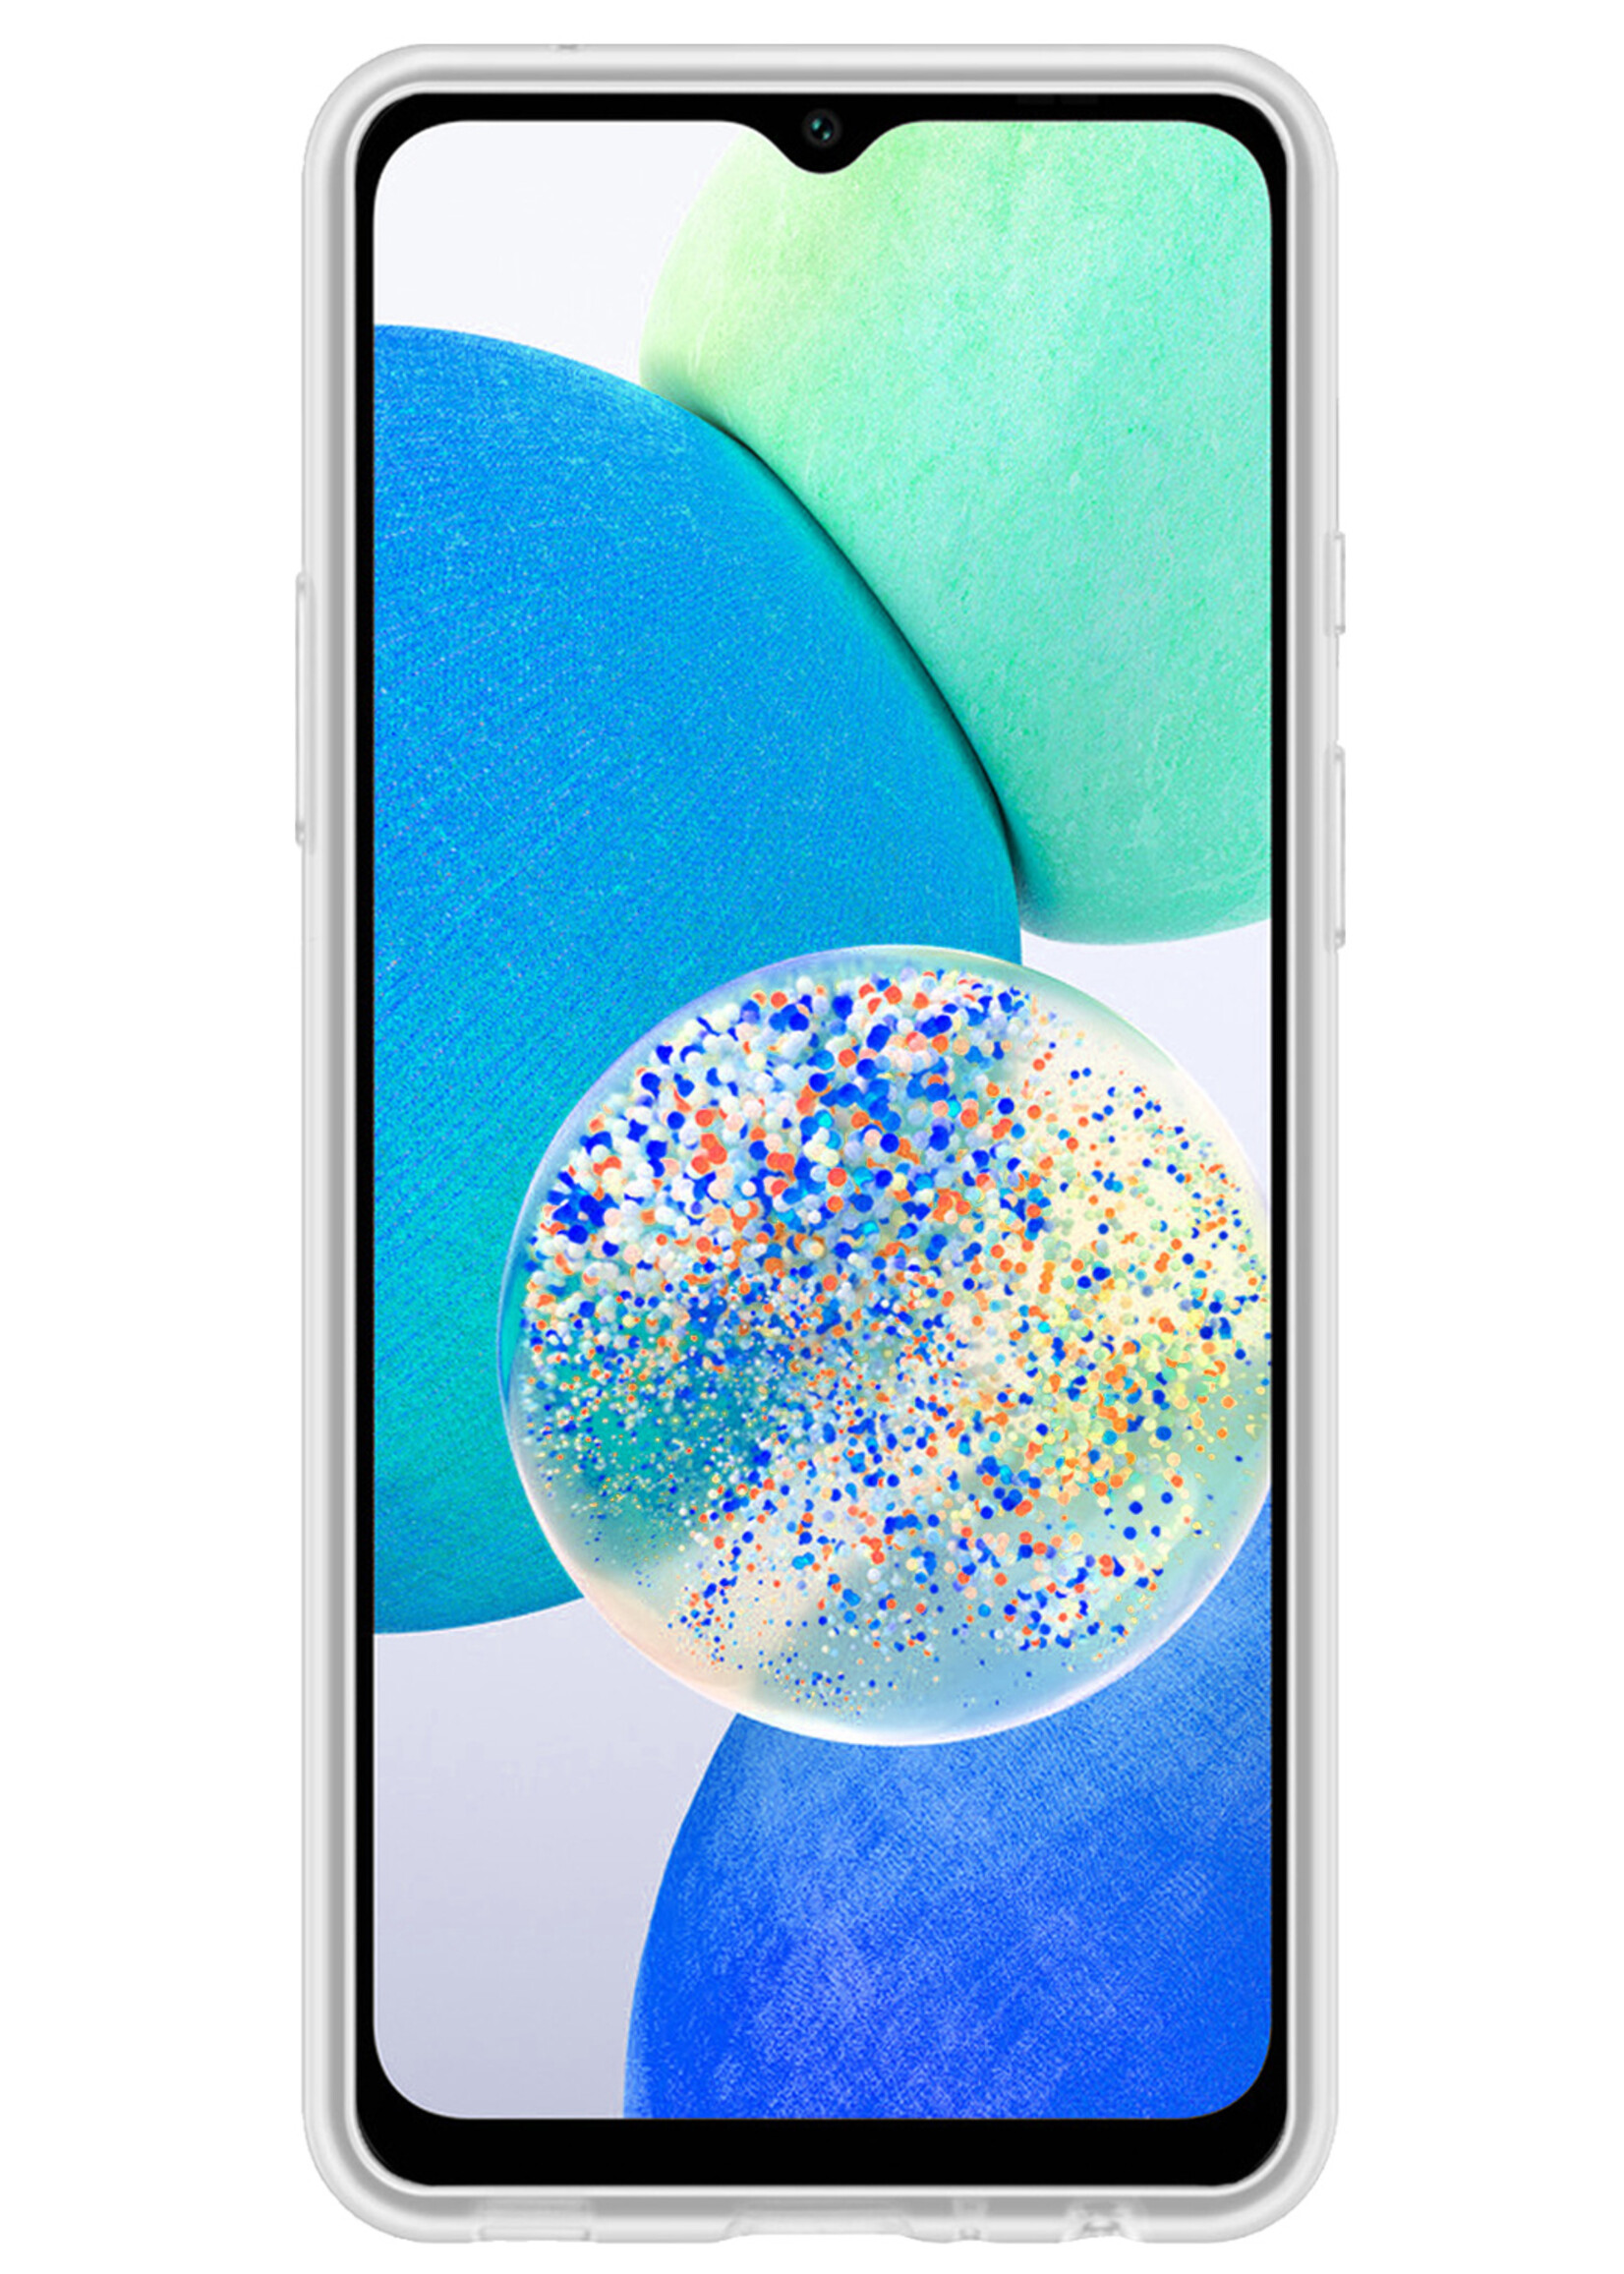 LUQ Hoesje Geschikt voor Samsung A14 Hoesje Siliconen Case - Hoes Geschikt voor Samsung Galaxy A14 Hoes Siliconen - Transparant - 2 Stuks